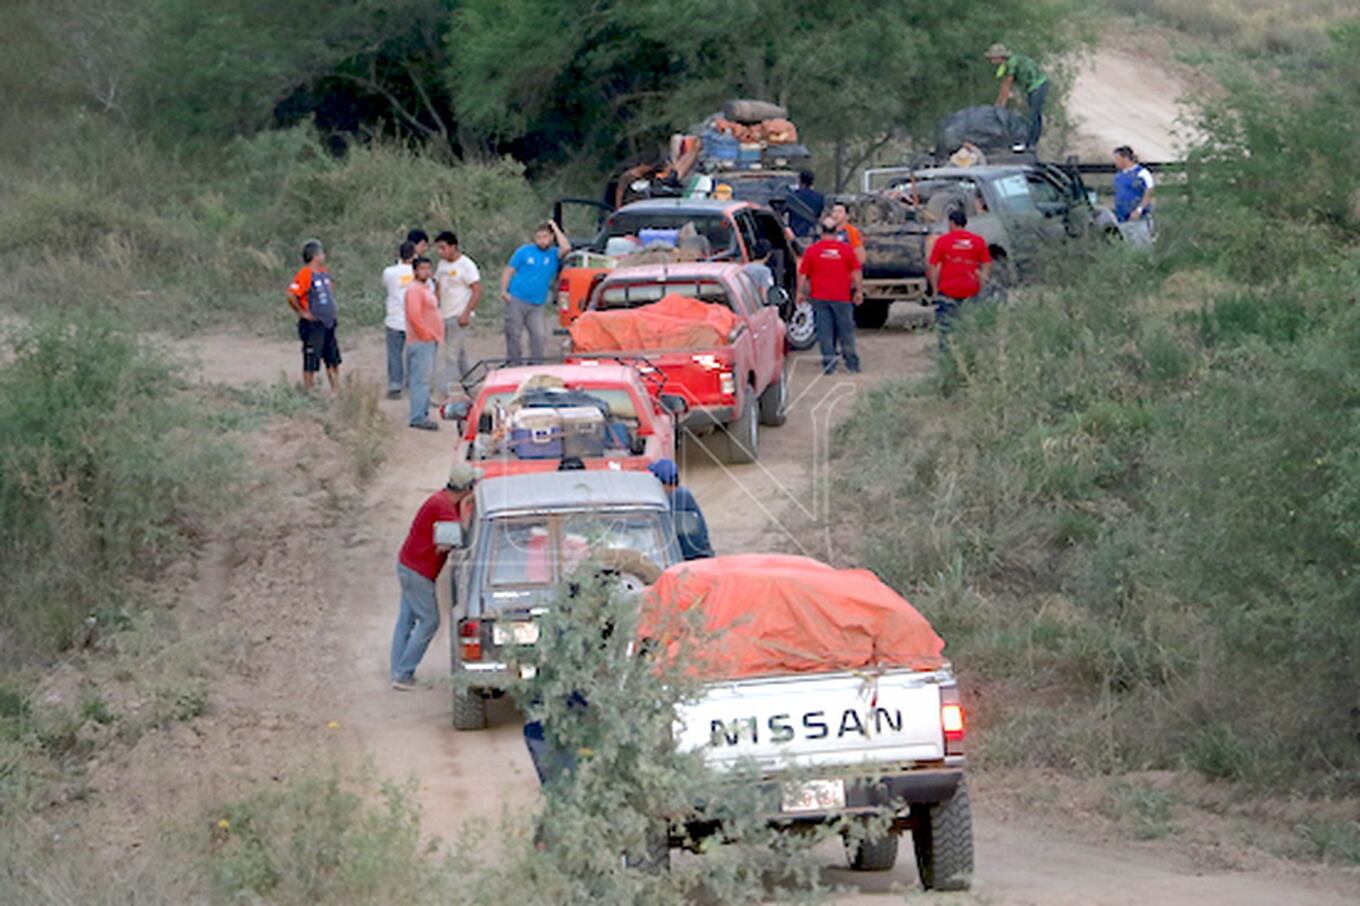 Los vehículos de auxilio ingresaron a las picadas cargados de muchas provistas y repuestos para asistir a
sus equipos.FOTO:ANÍBAL GAUTO